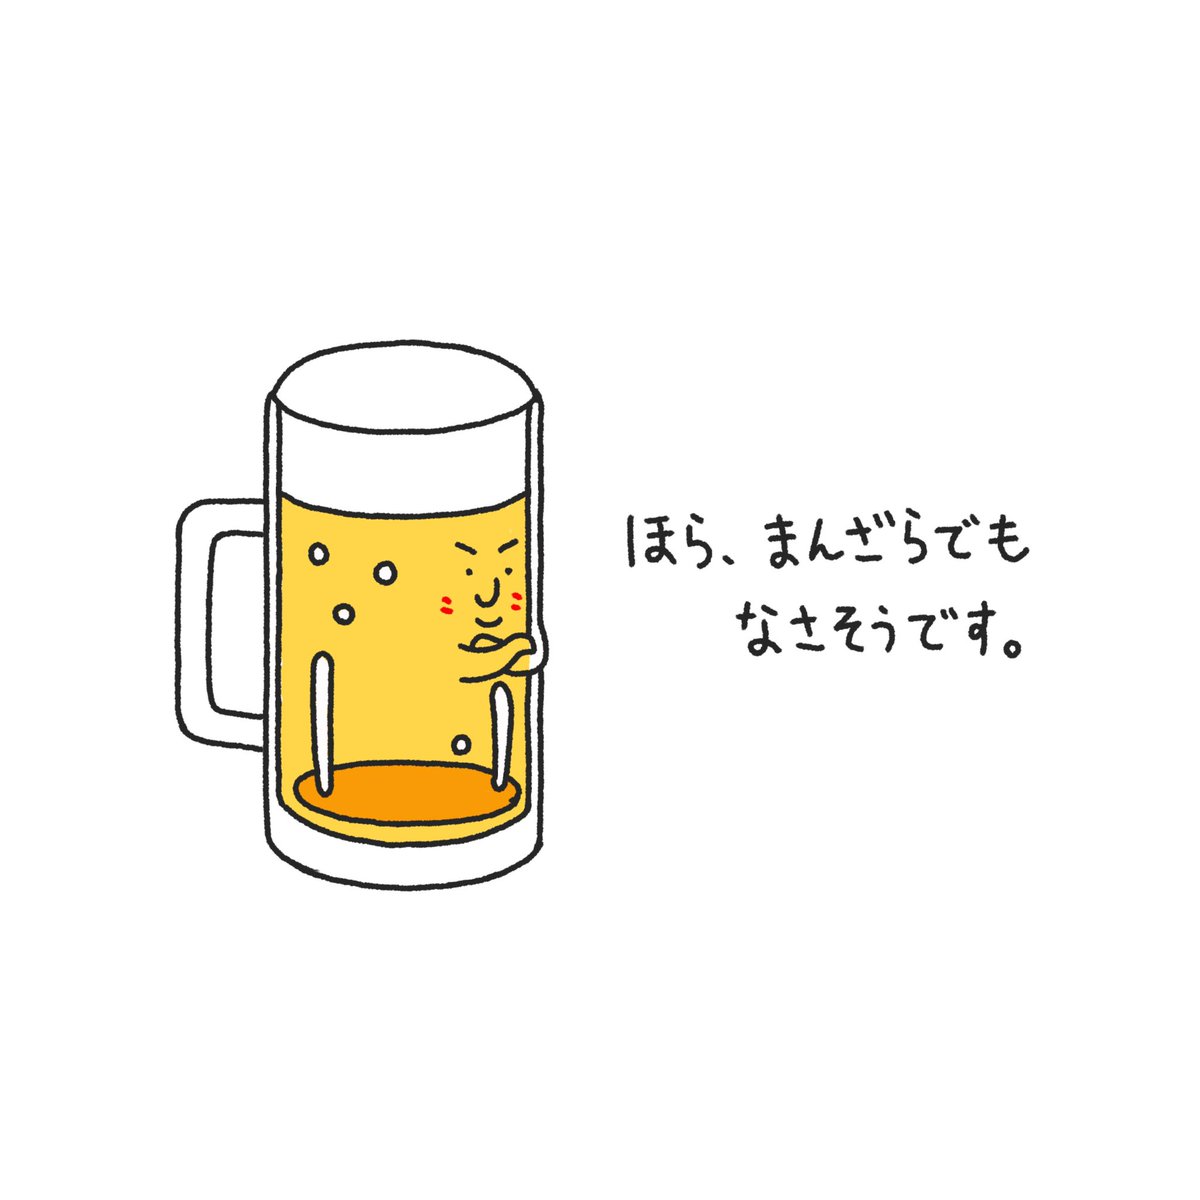 4コマ漫画 ビールの頼み方 がネットで反響 なんだこの可愛いビールは 絶対ビール うん ガジェット通信 Getnews